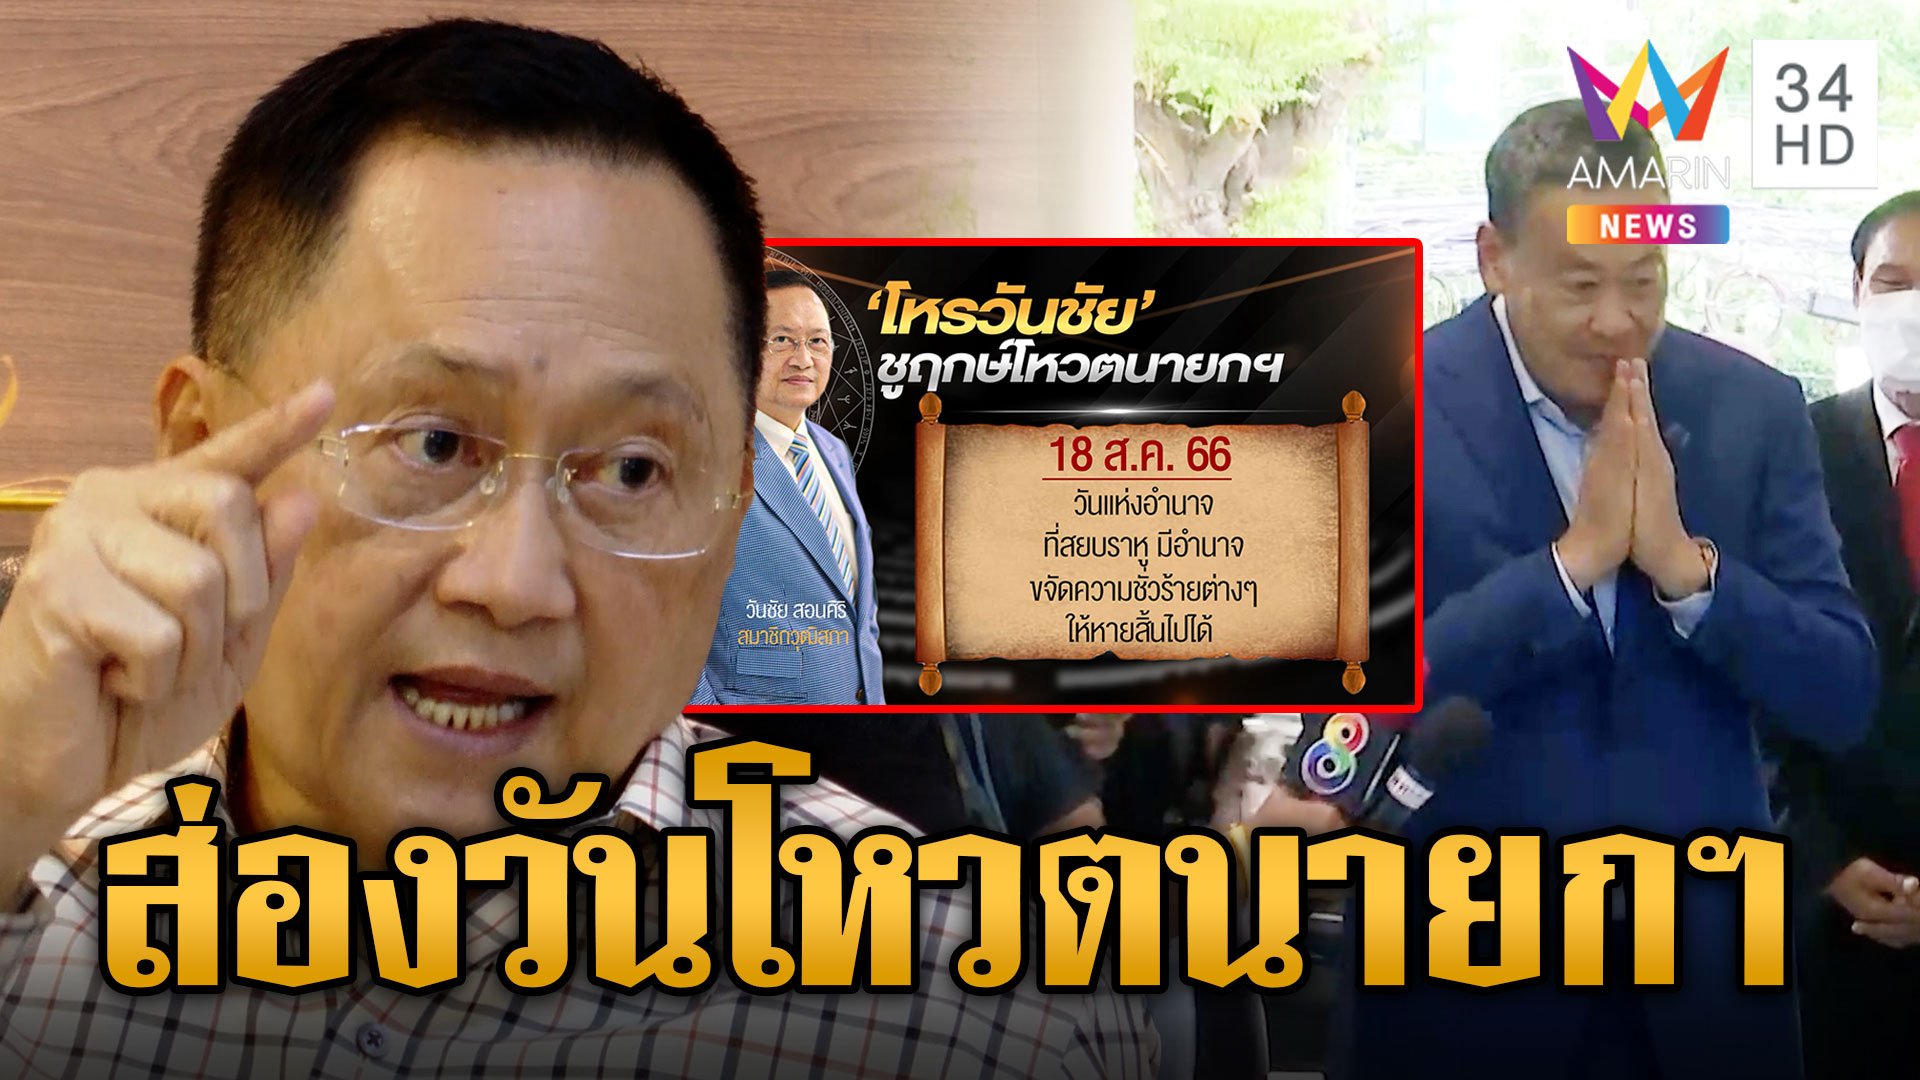 "สว.วันชัย" เผยฤกษ์ดีโหวต นายกฯ พร้อมเทคะแนนให้เพื่อไทยมีลุงไม่มีลุงไม่เกี่ยว | ข่าวอรุณอมรินทร์ | 15 ส.ค. 66 | AMARIN TVHD34